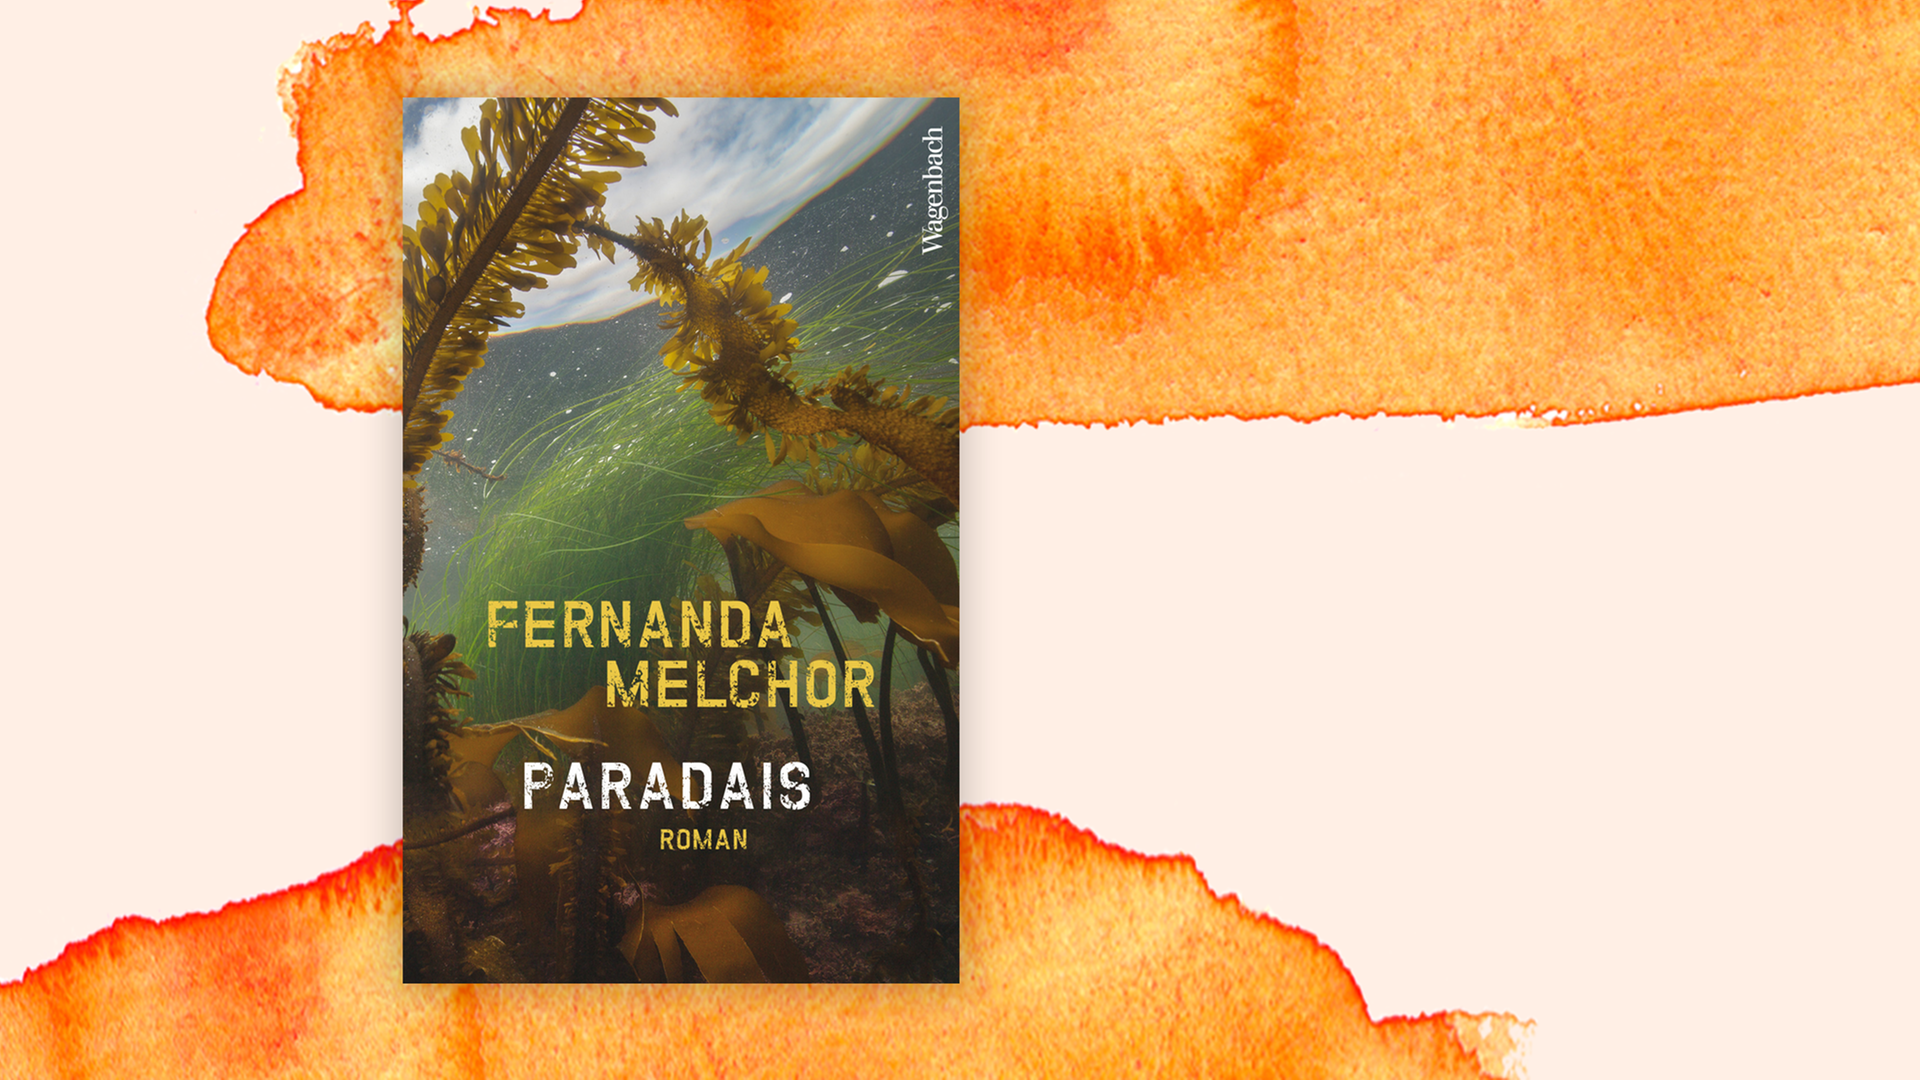 Buchcover Fernanda Melchor: "Paradais"